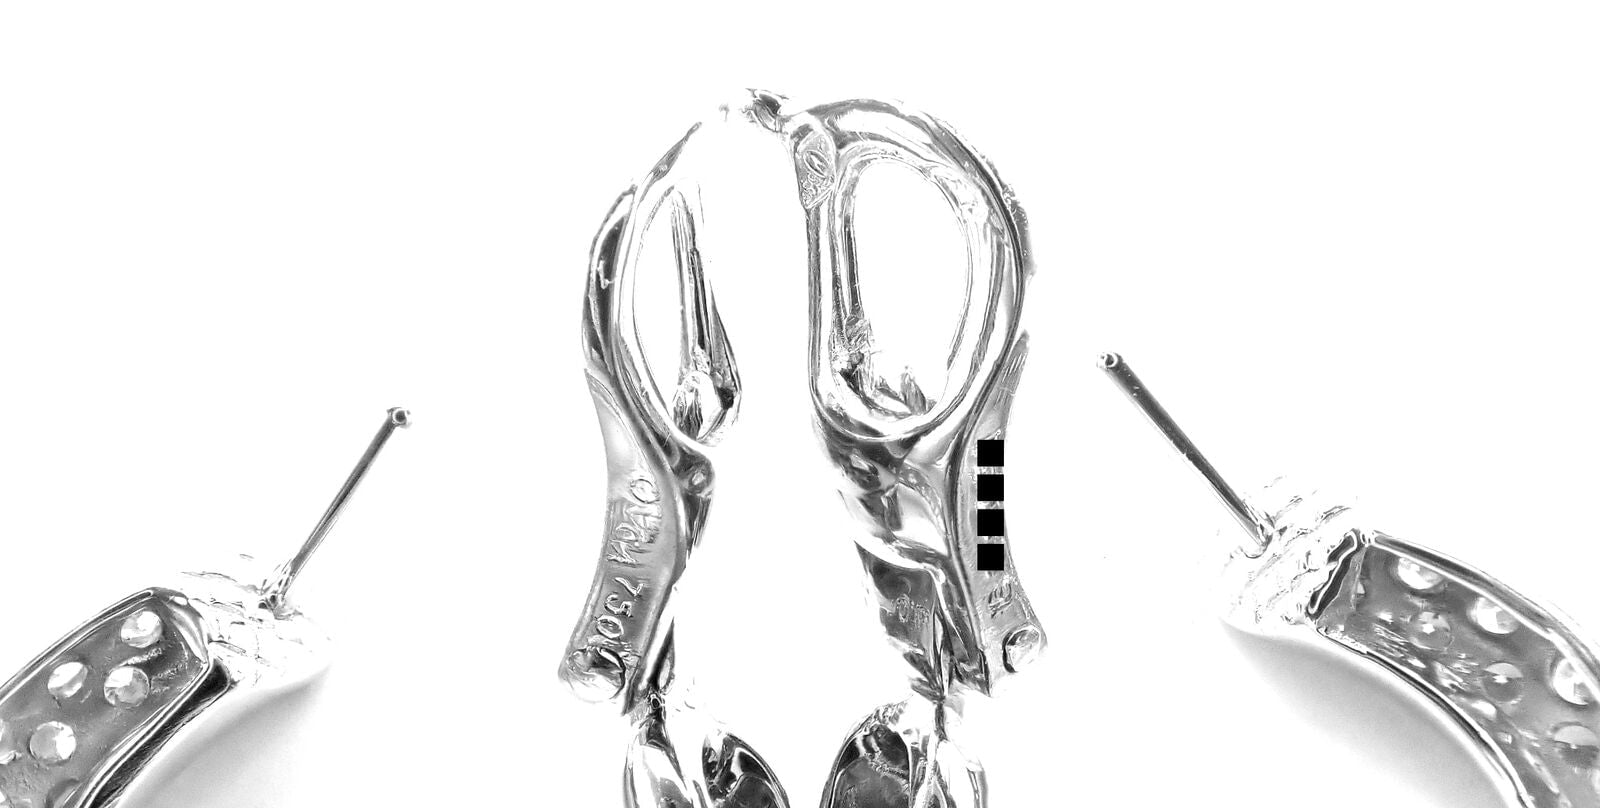 Van Cleef & Arpels Jewelry & Watches:Fine Jewelry:Earrings Authentic! Van Cleef & Arpels 18k White Gold Diamond Hoop Earrings Paper